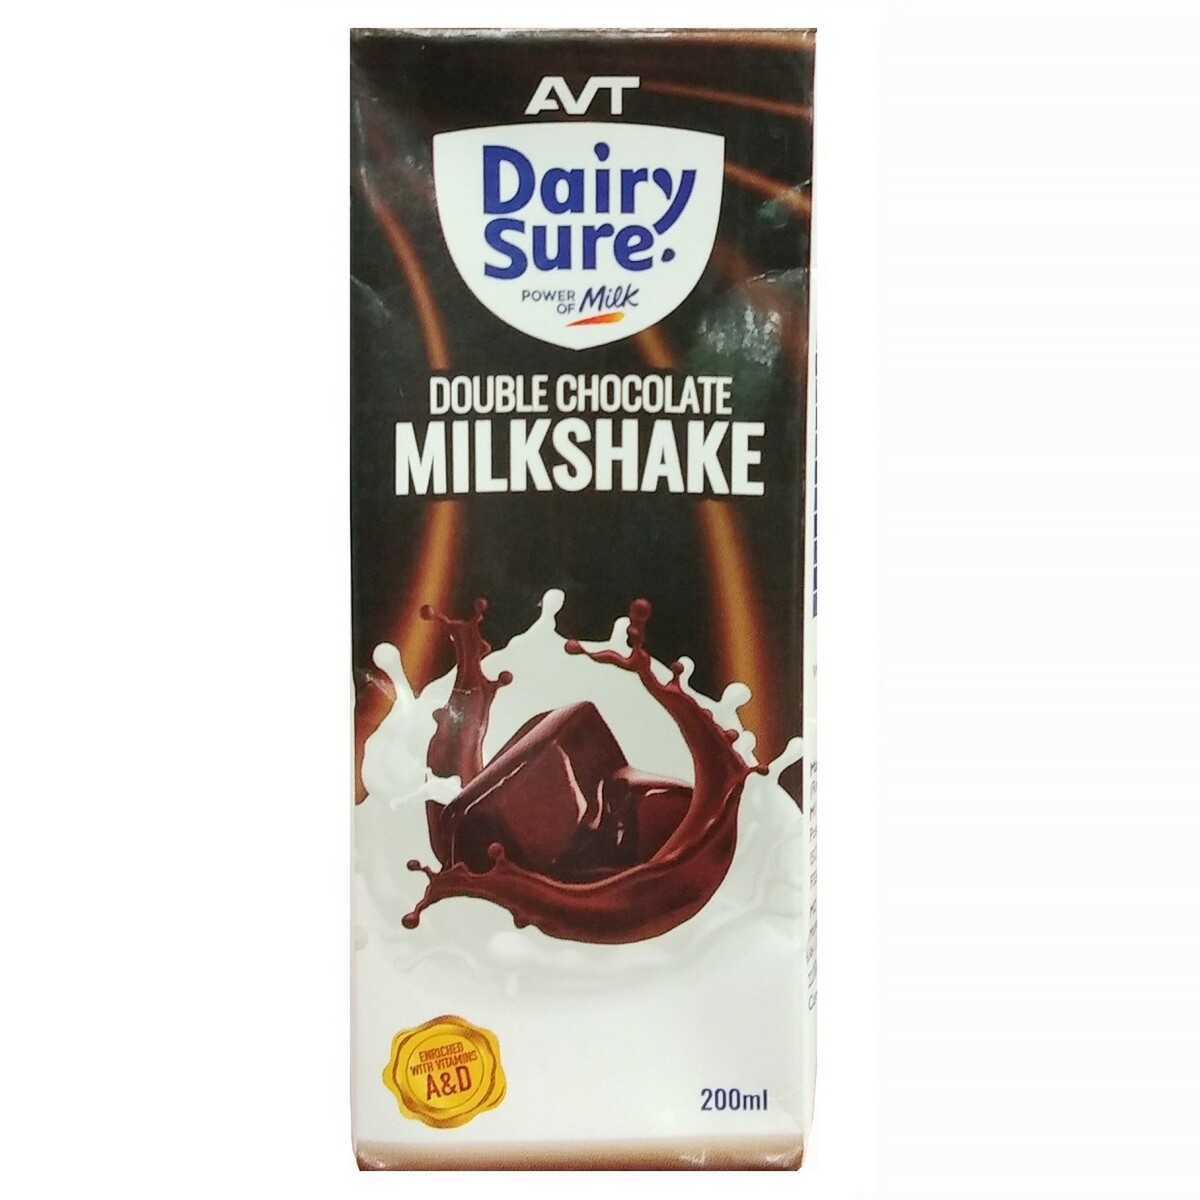 AVT Dairy Sure Double Chocolate Milk shake 200ml